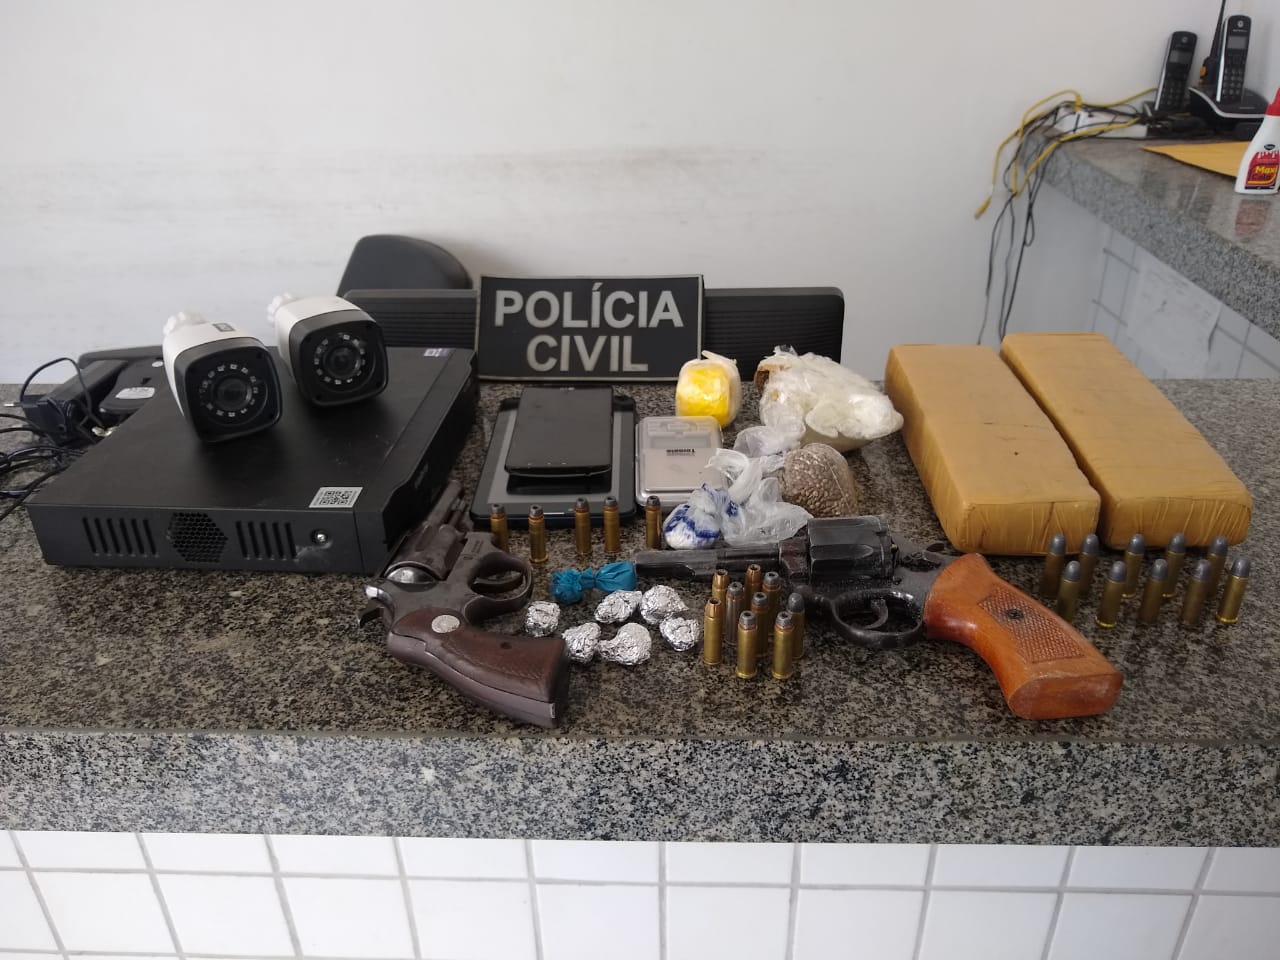 Delegacias de Polícia de Peritoró, Coroatá e Pedreiras, em ação conjunta, cumpriram 2 (dois) mandados de prisão e prenderam outras 2 (duas) pessoas em flagrante por tráfico de drogas e posse ilegal de arma de fogo.